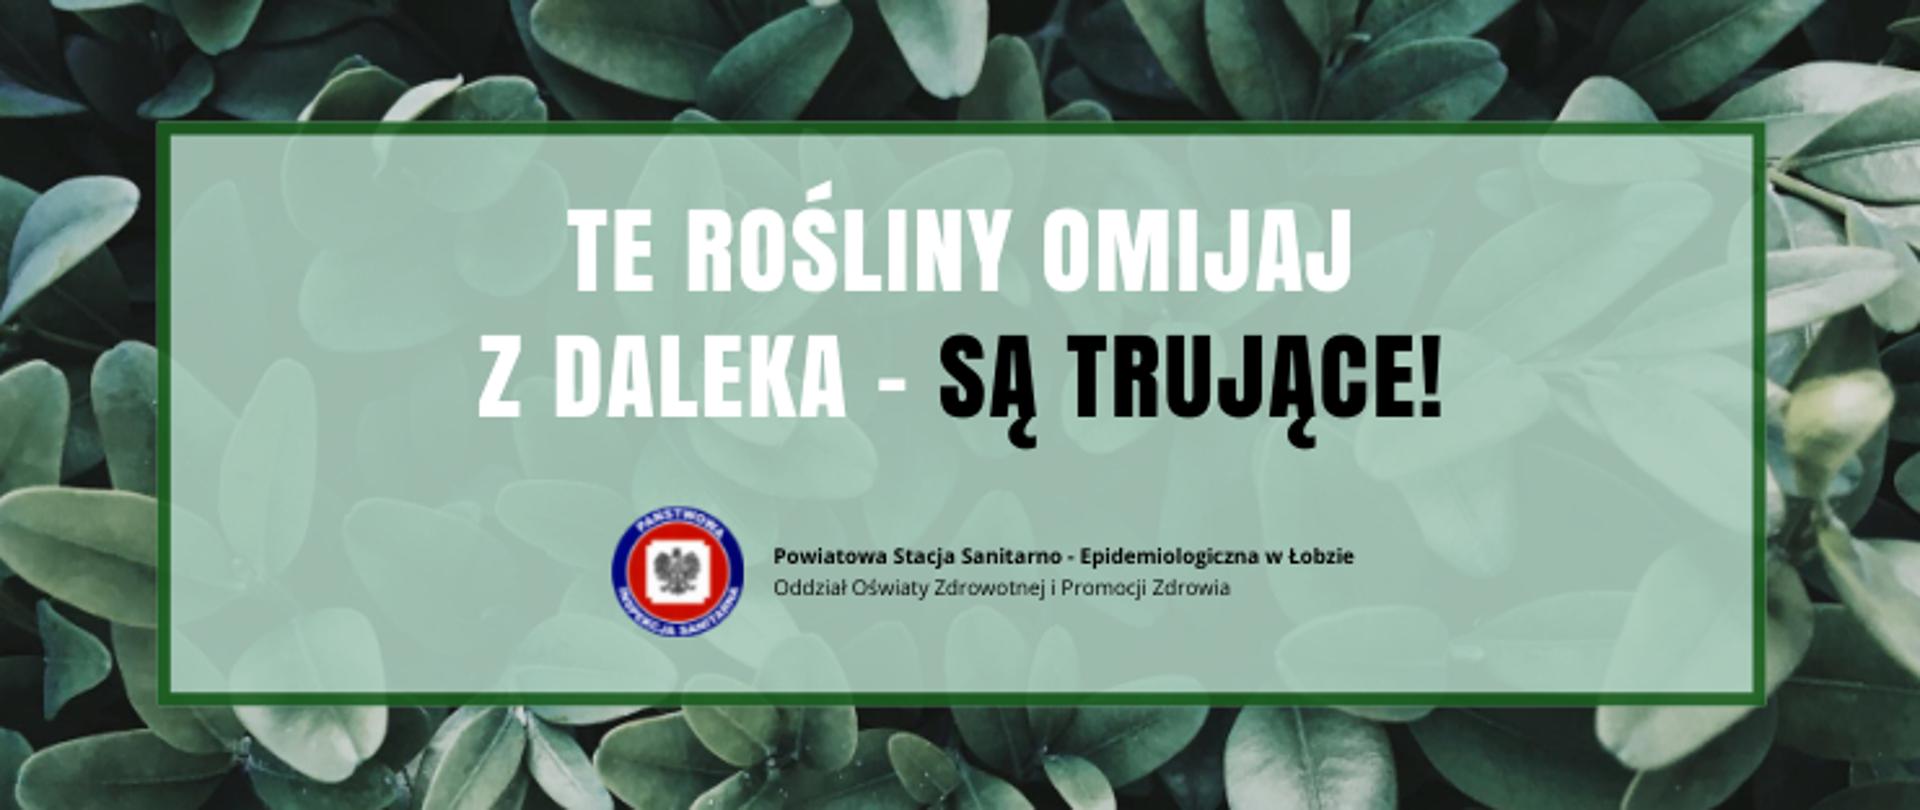 Na grafice znajduje się napis: TE ROŚLINY OMIJAJ Z DALEKA - SĄ TRUJĄCE! Poniżej widnieje logo Państwowej Inspekcji Sanitarnej oraz jest napisane: Powiatowa Stacja Sanitarno - Epidemiologiczna w Łobzie. Tło jest zielone.